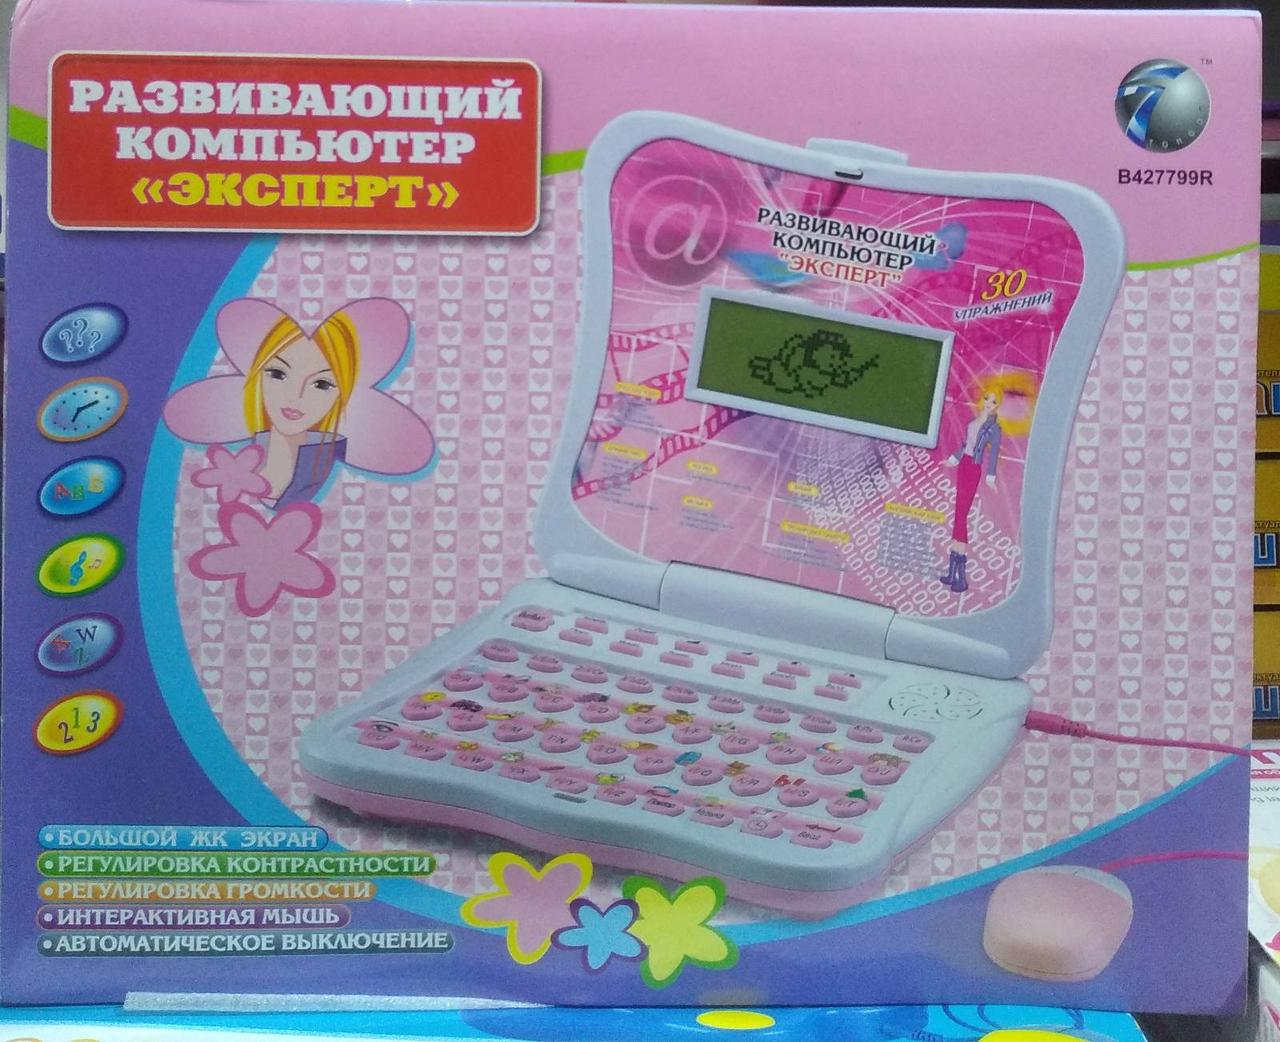 Детский компьютер ноутбук обучающий развивающий  ЭКСПЕРТ, арт. B427799R